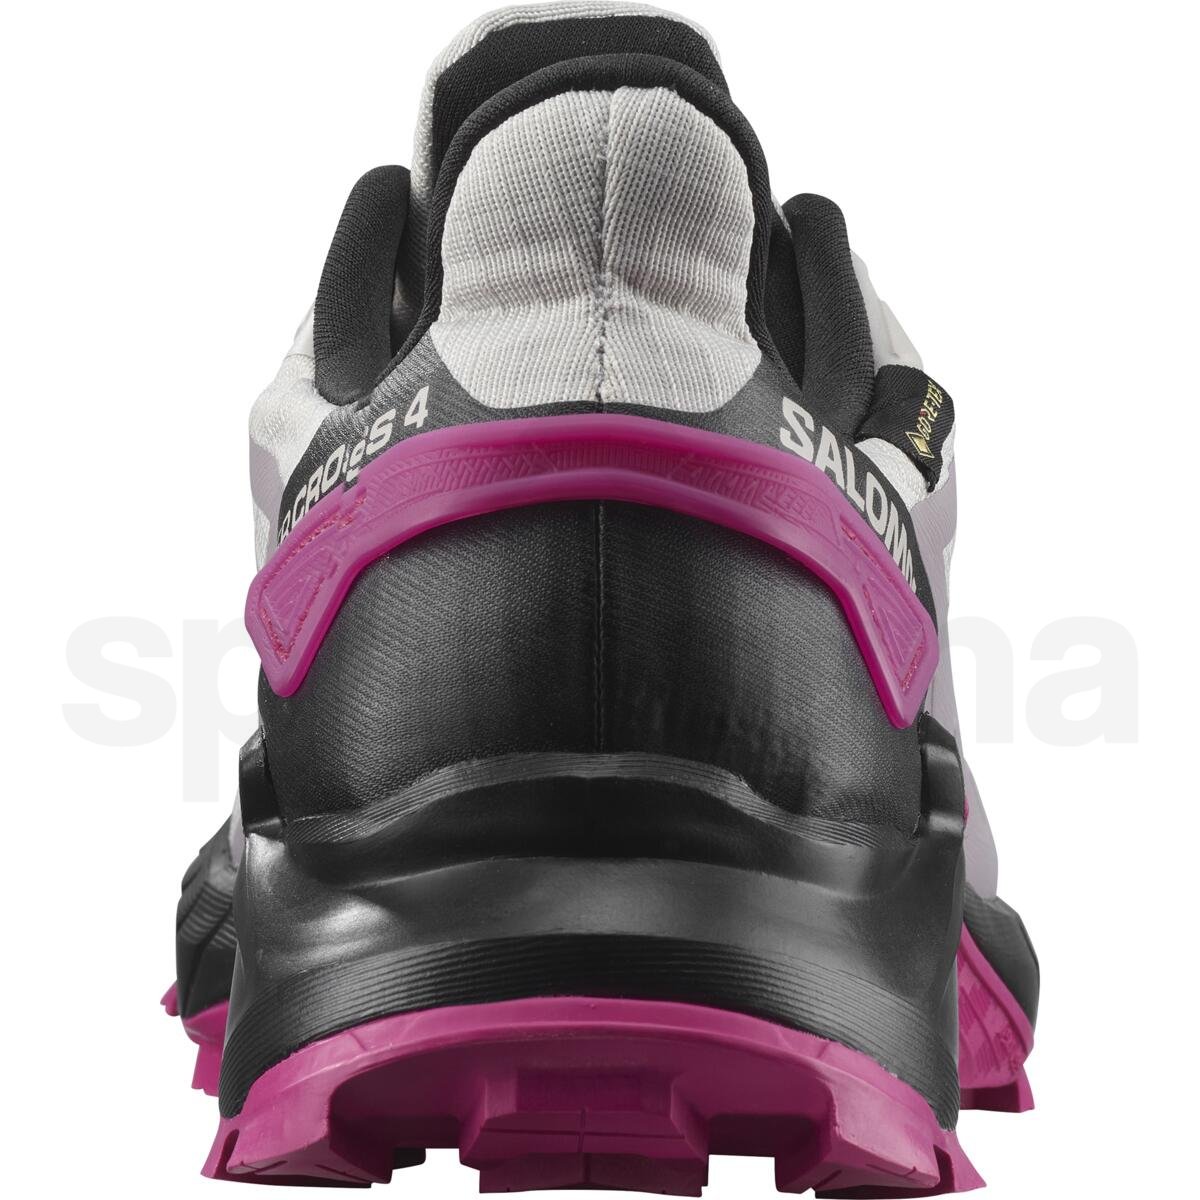 Obuv Salomon Supercross 4 GTX W - šedá/růžová